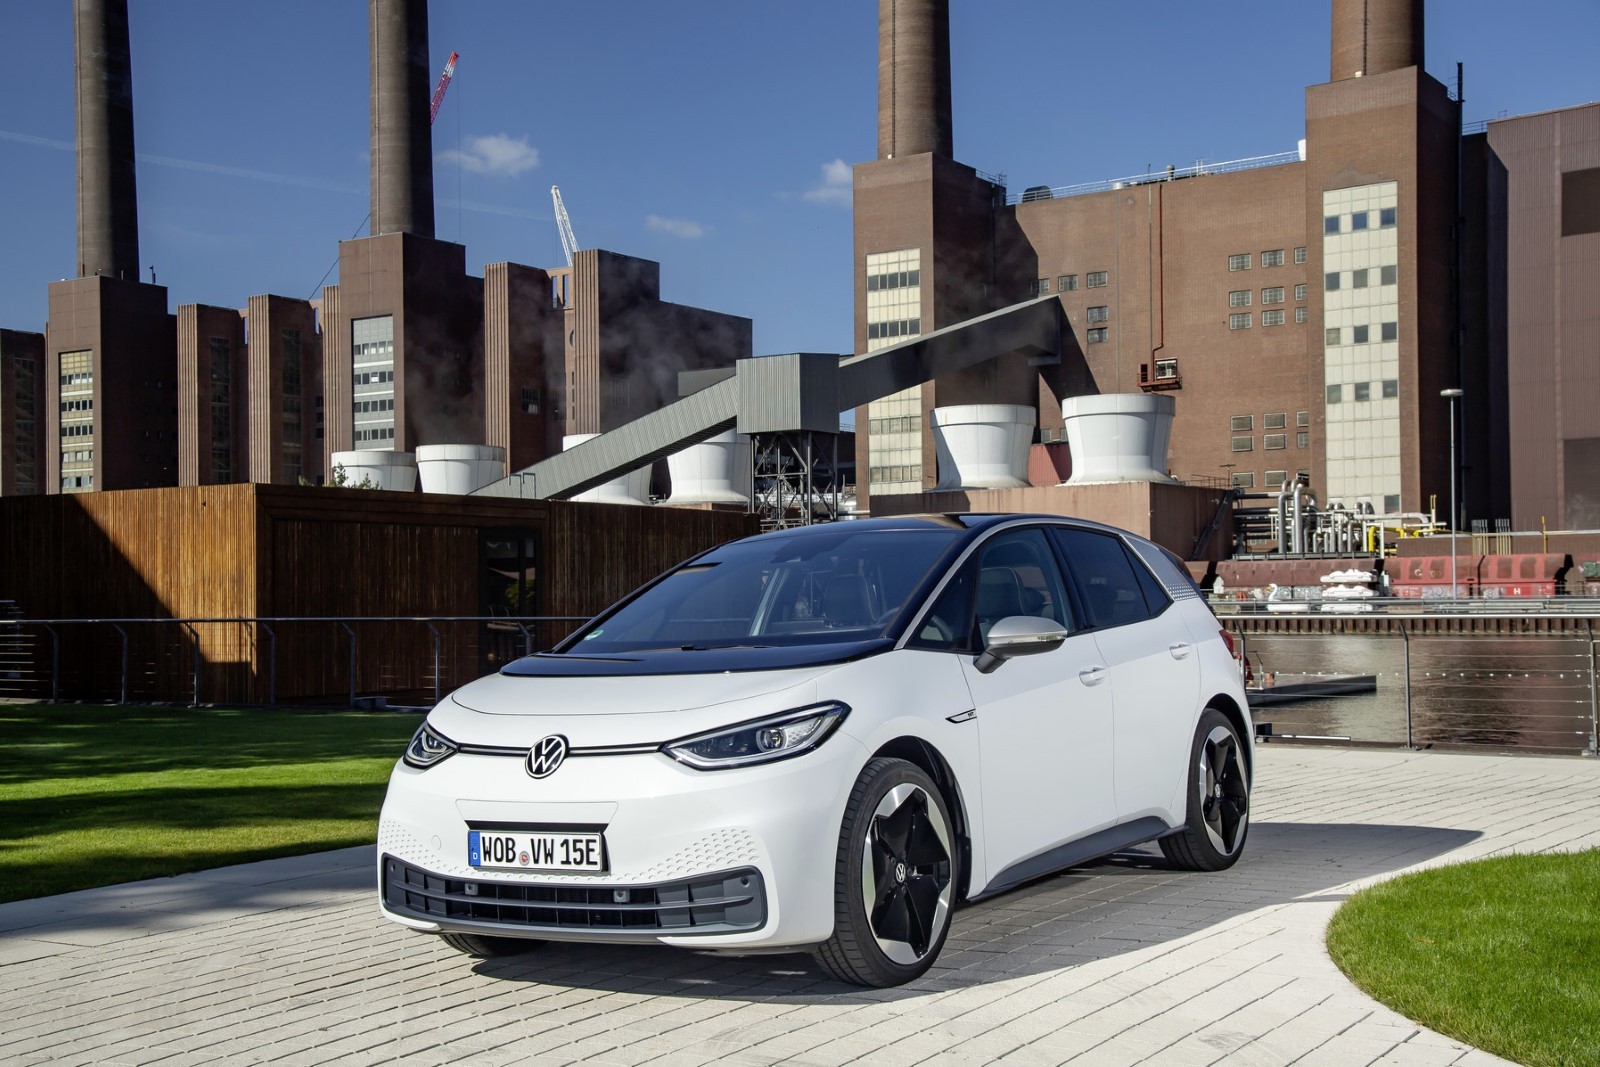 H Unicars παρουσιάζει το ID.3, το πρώτο ηλεκτρικό μοντέλο στην ιστορία της VW